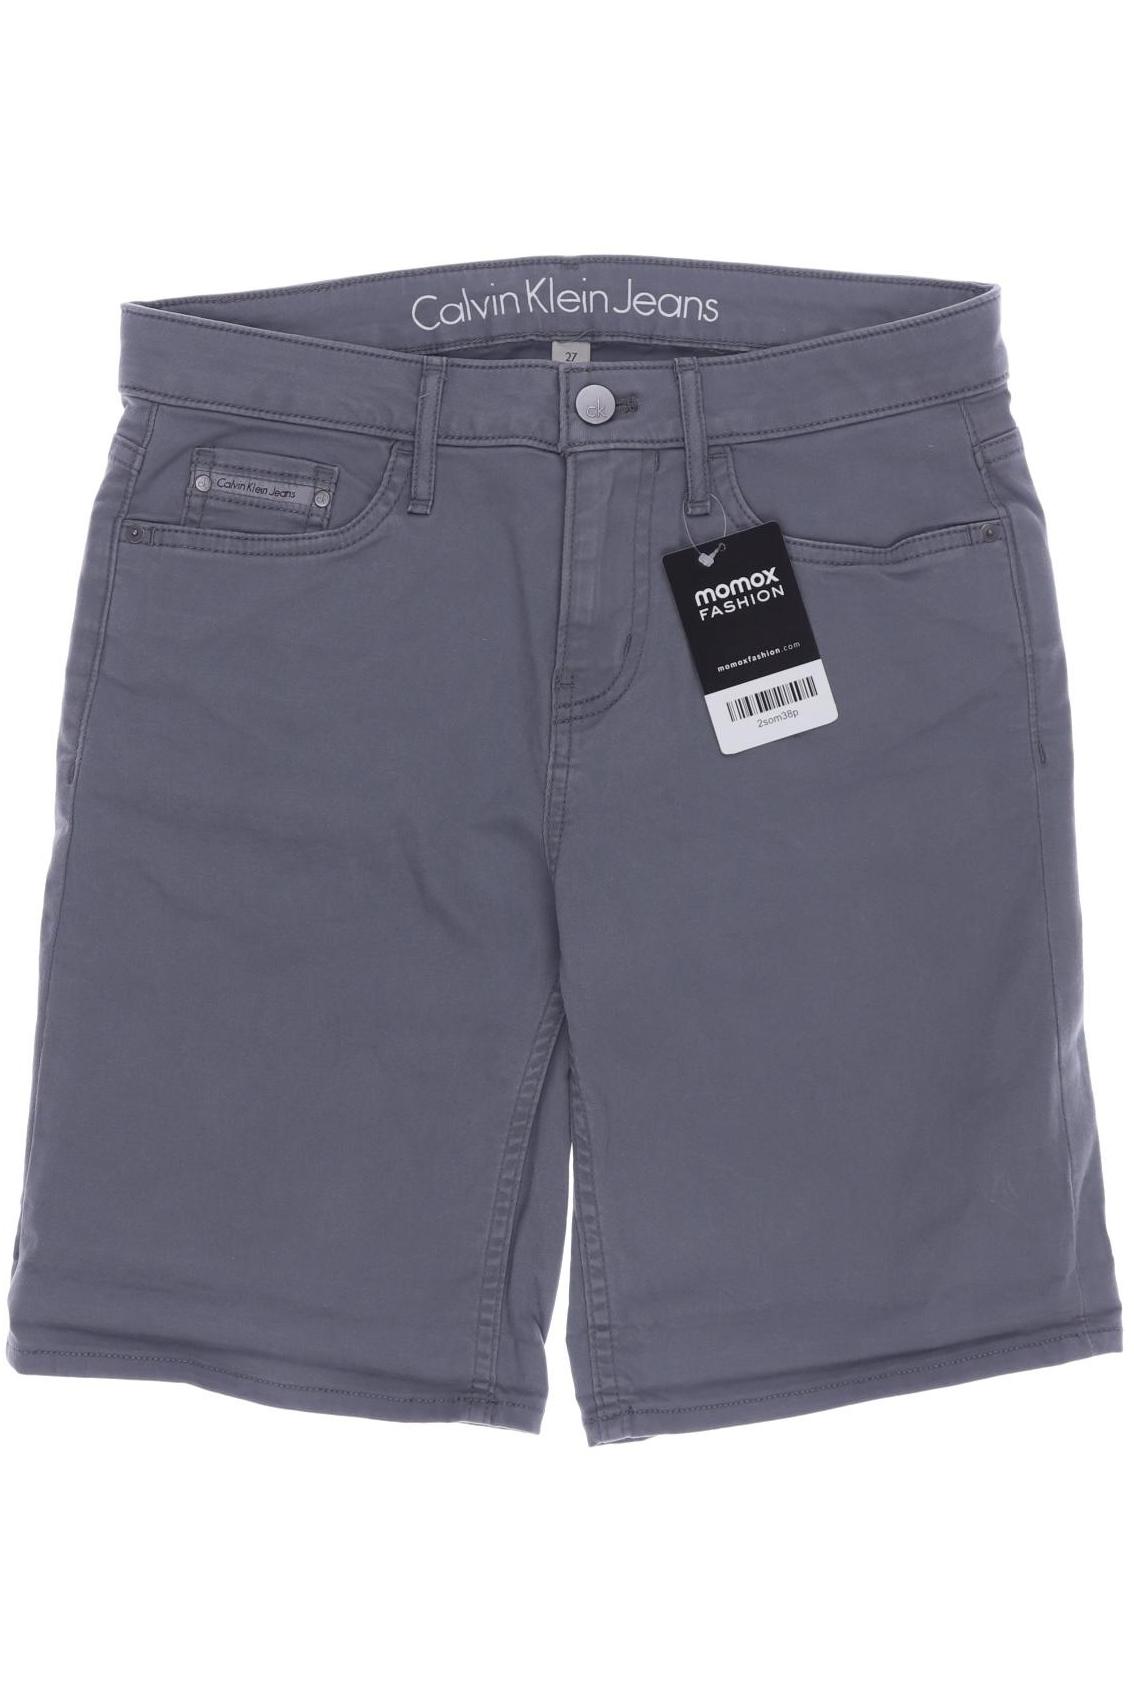 Calvin Klein Jeans Damen Shorts, grau von Calvin Klein Jeans